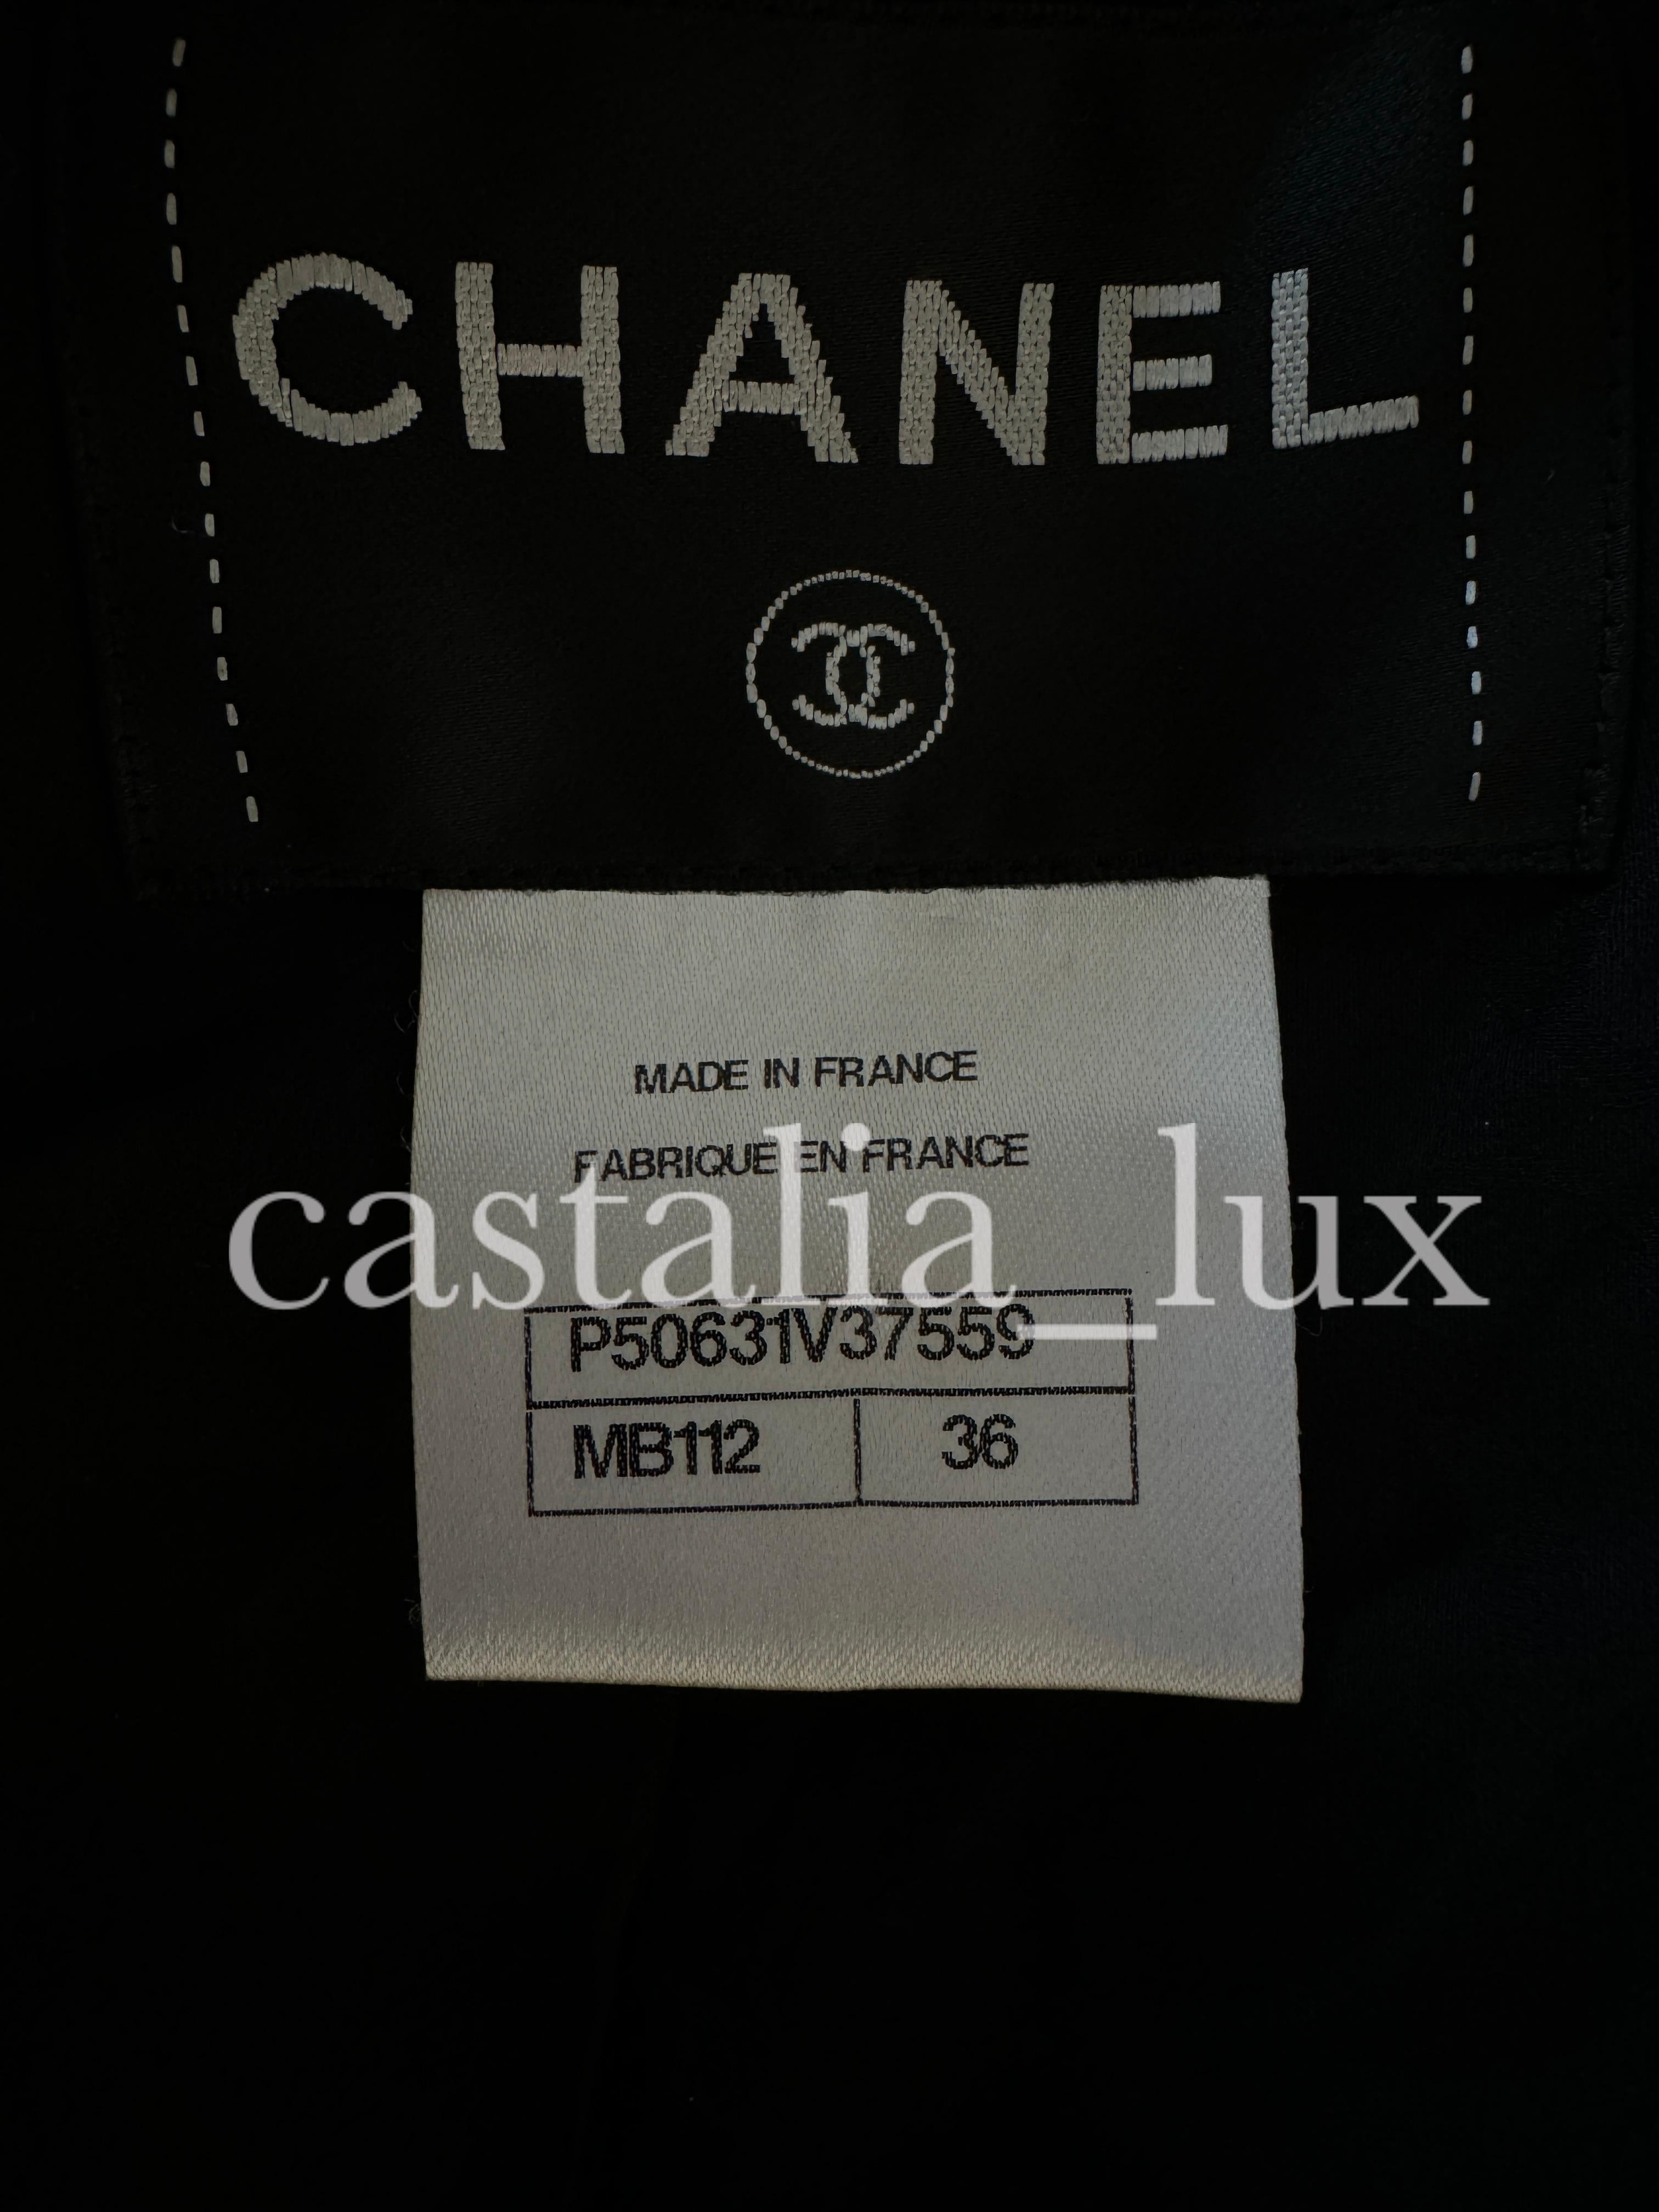 Chanel New 9K Iconic Gigi Hadid Style Tweed Jacket For Sale 16